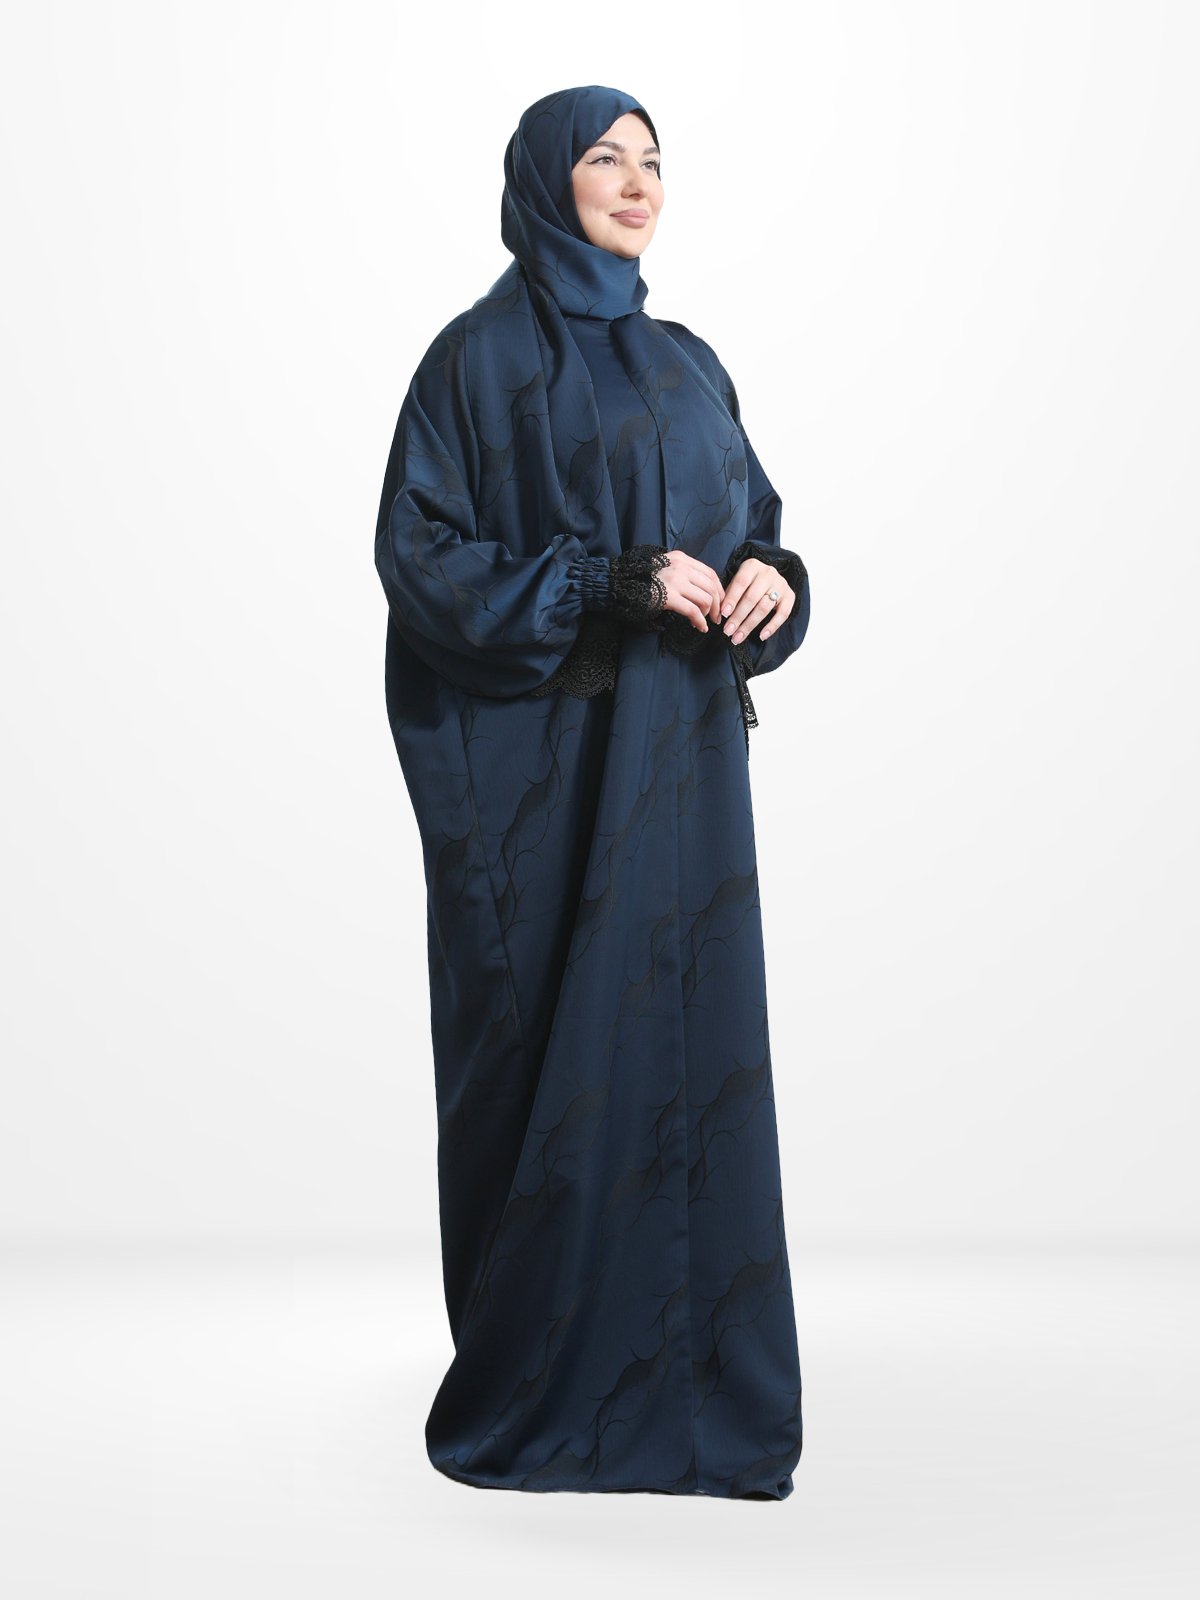 One - Piece Prayer Dress & Abaya with attached Hijab - Satin - Modest Essence